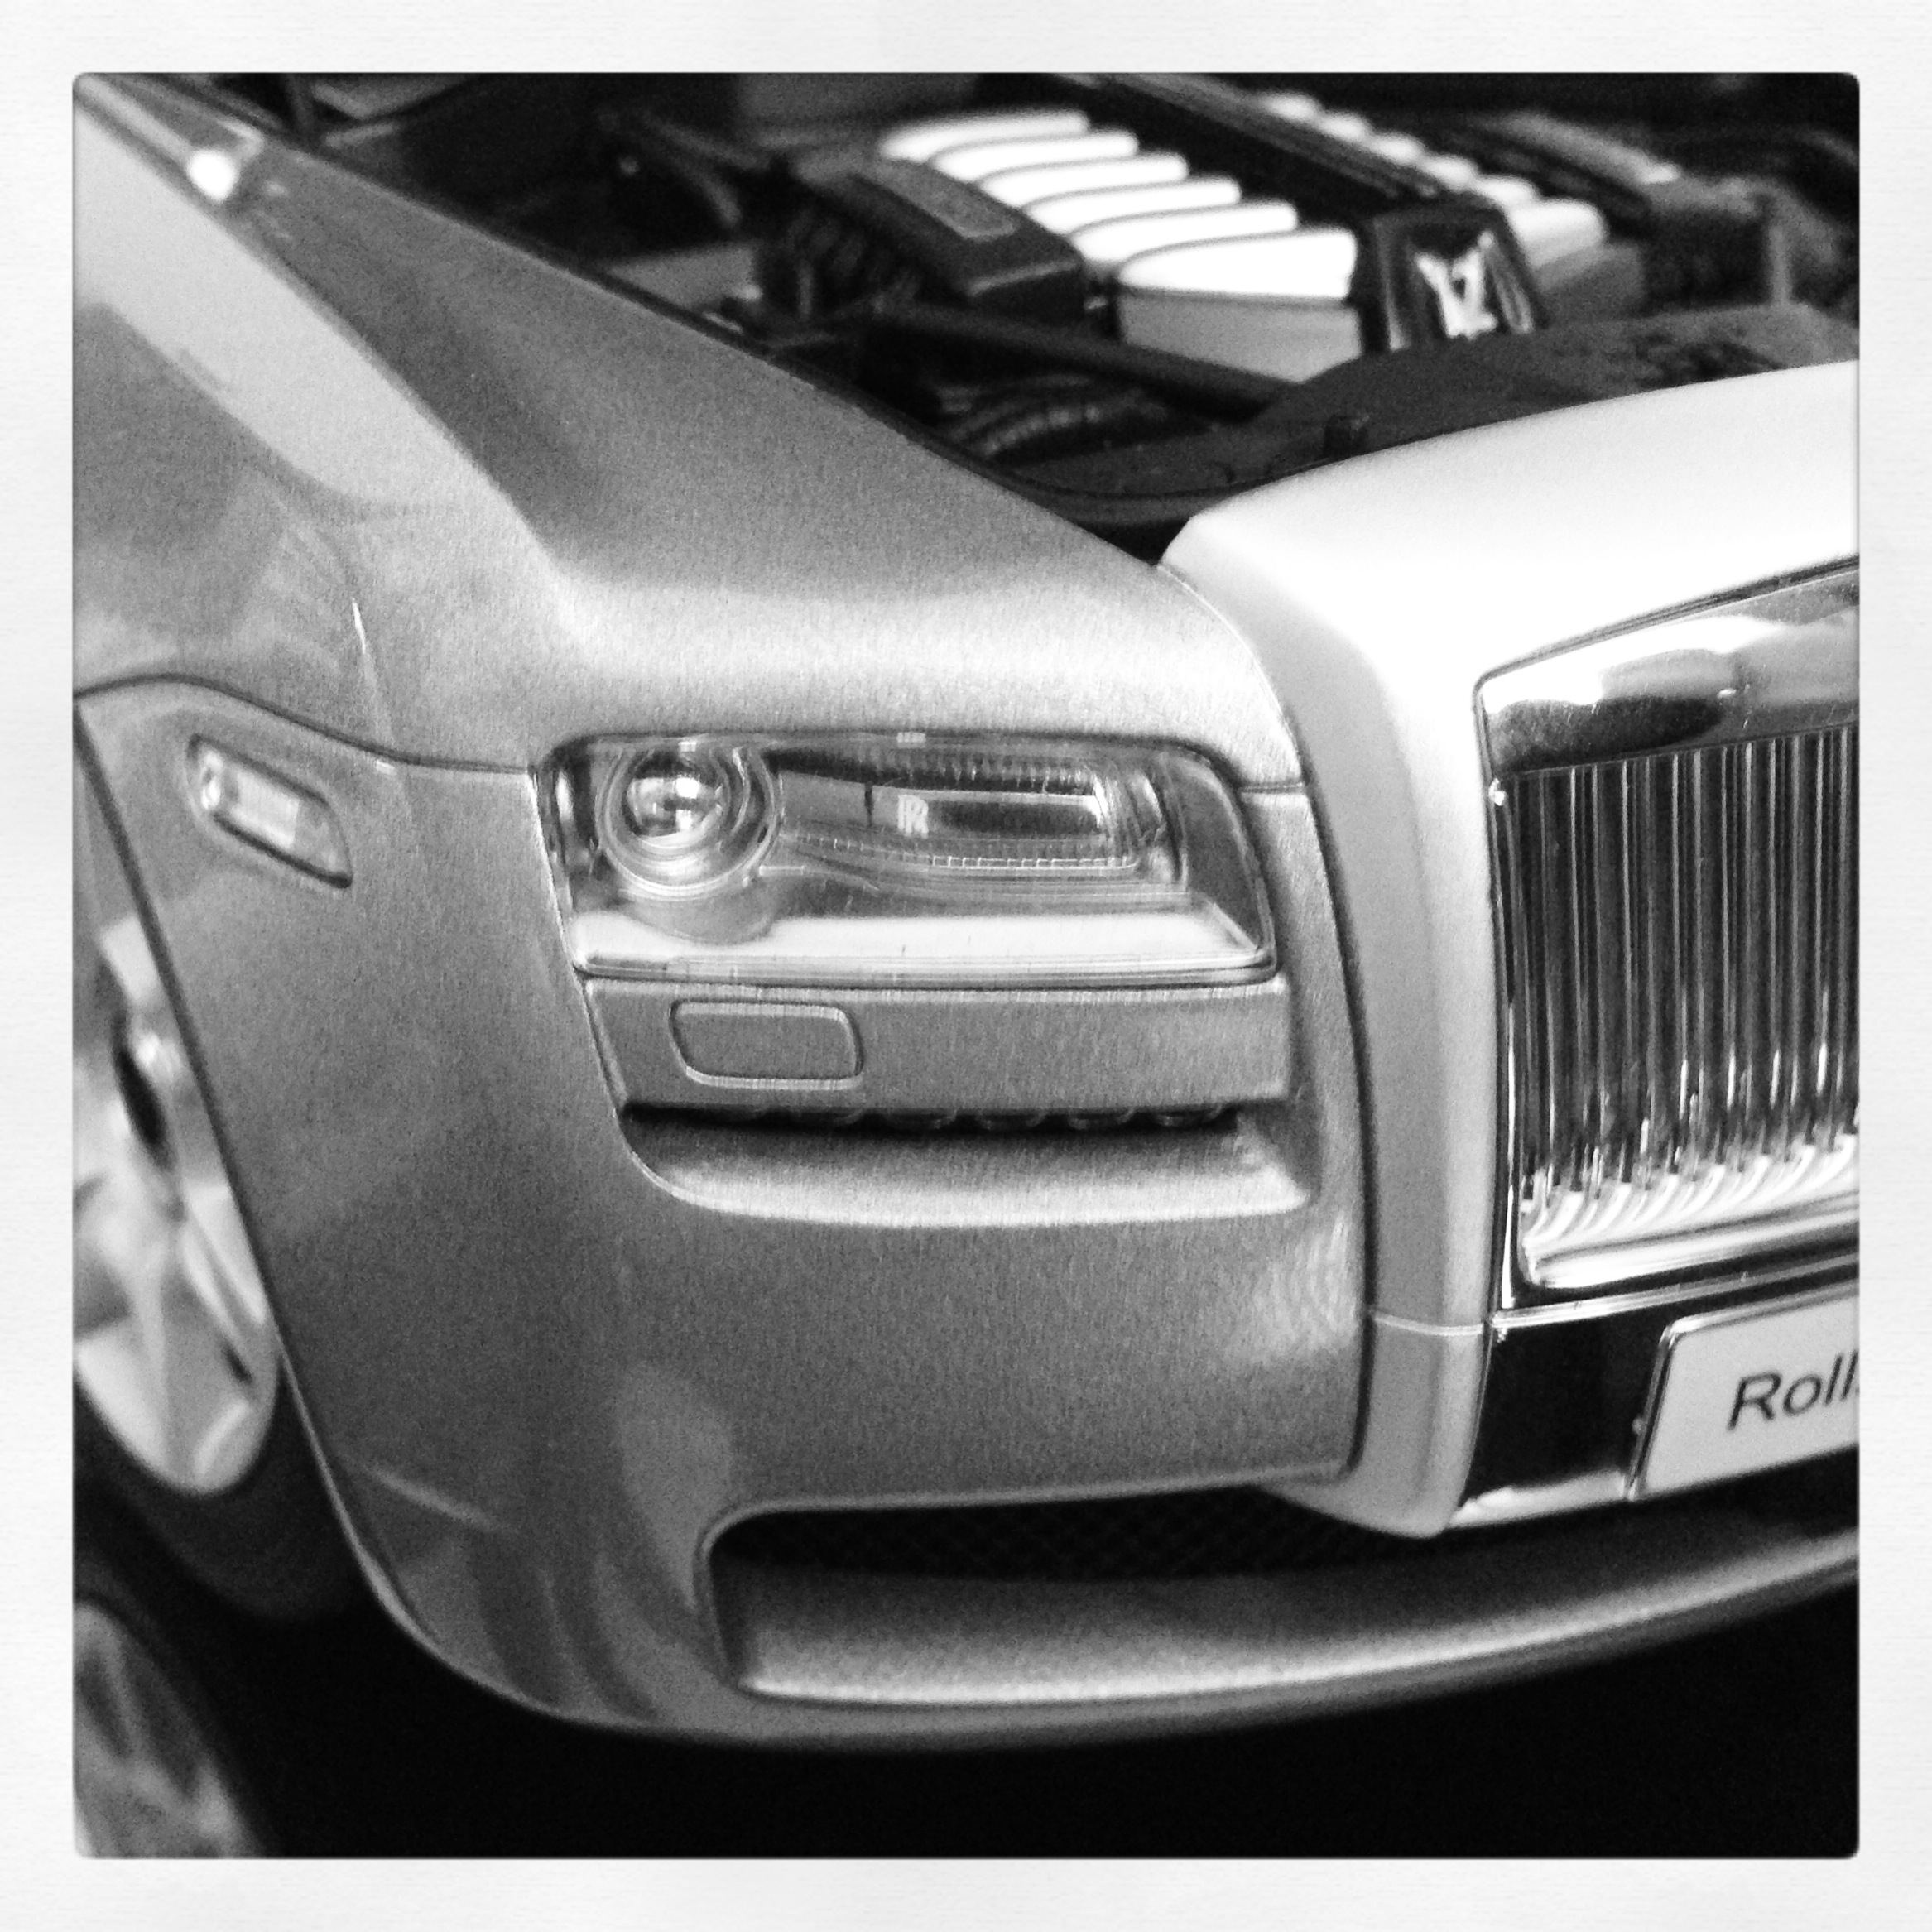 Rolls-Royce Ghost, silver (kyosho)